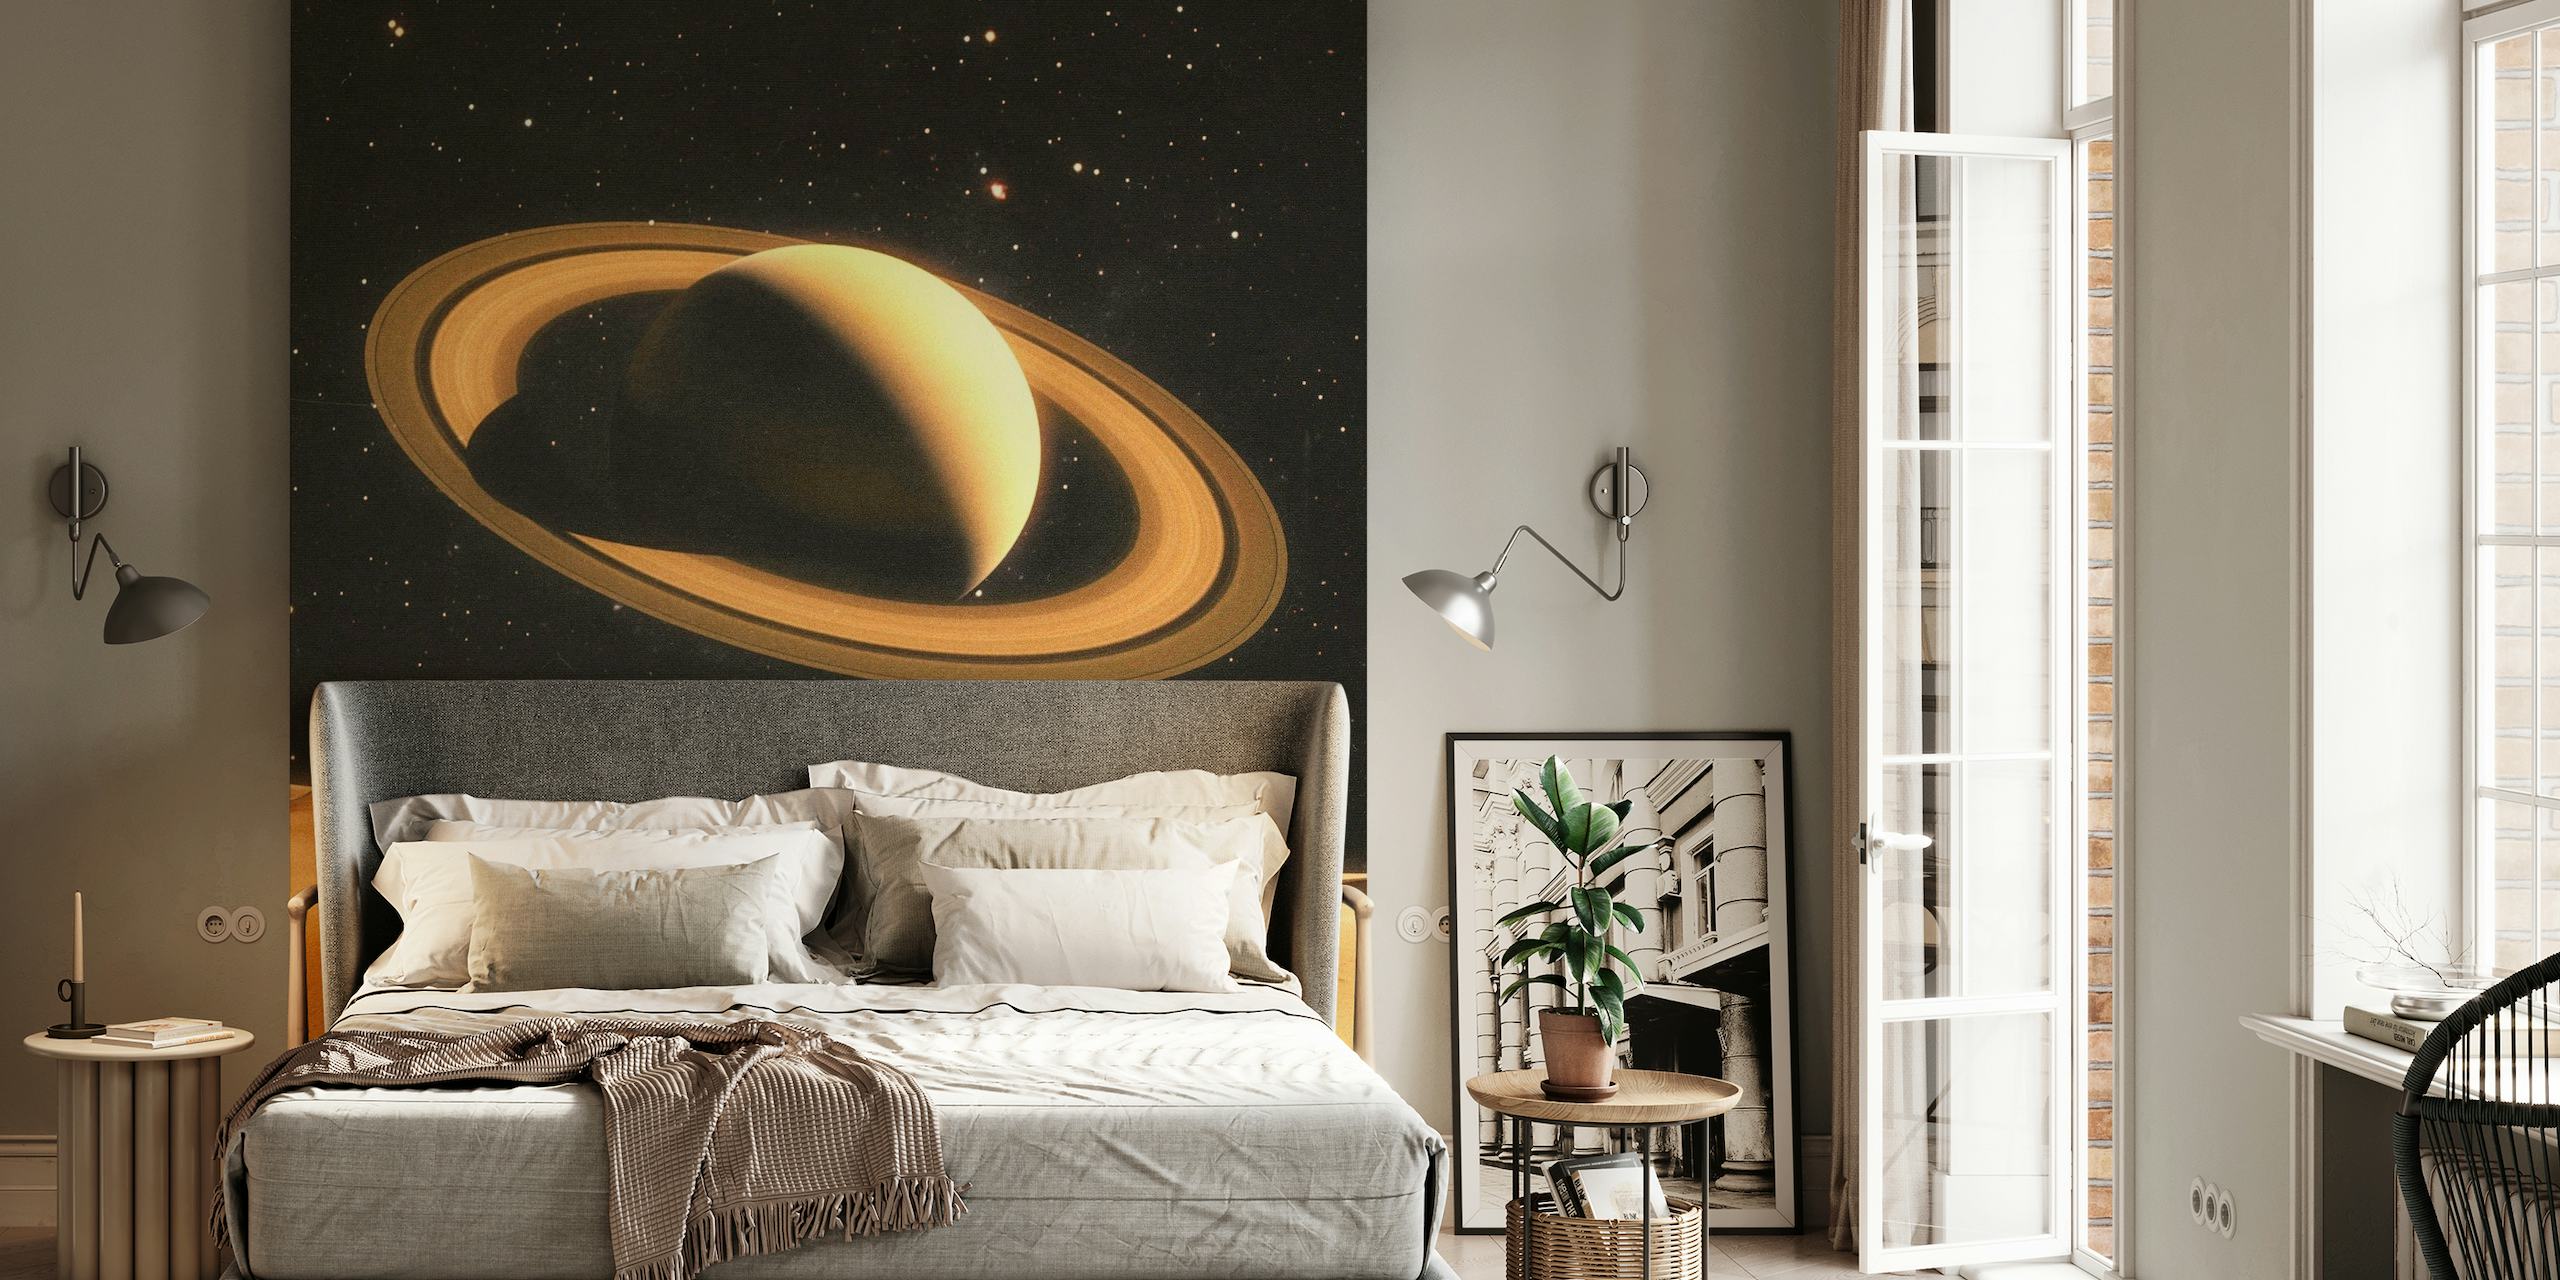 Mural de dos personas en un planeta desértico con Saturno de fondo